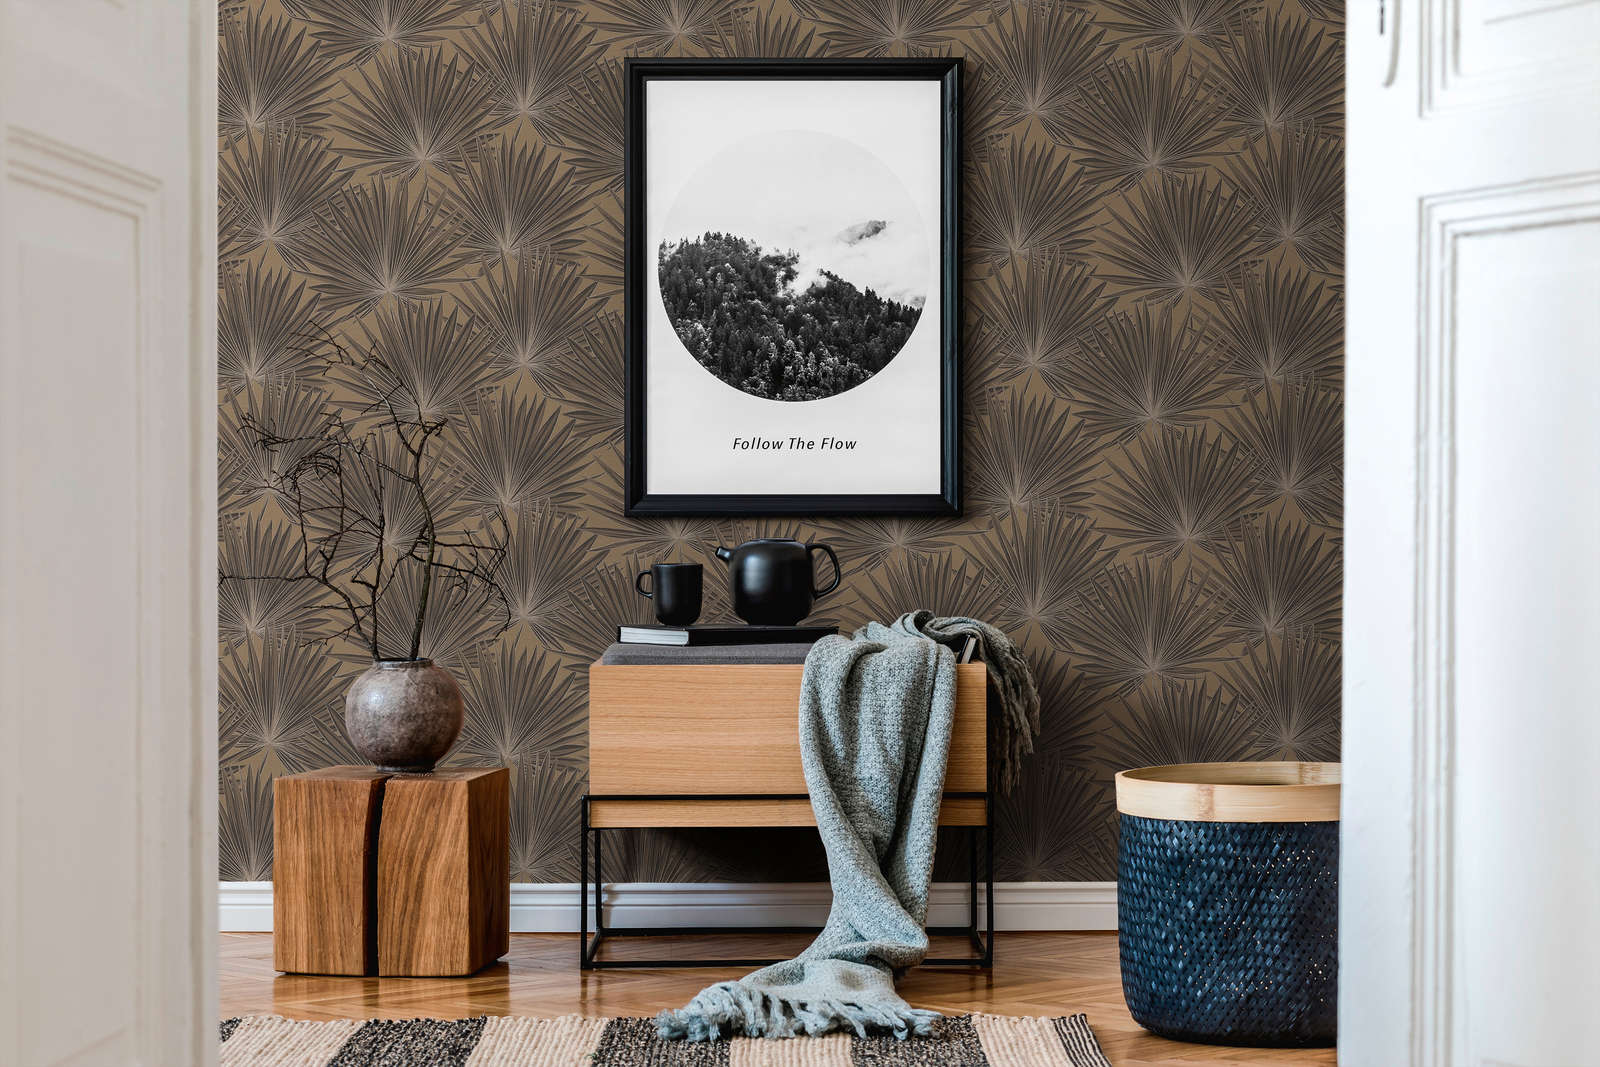             Vliestapete mit Palmblättern und Glanzeffekt – Braun, Schwarz
        